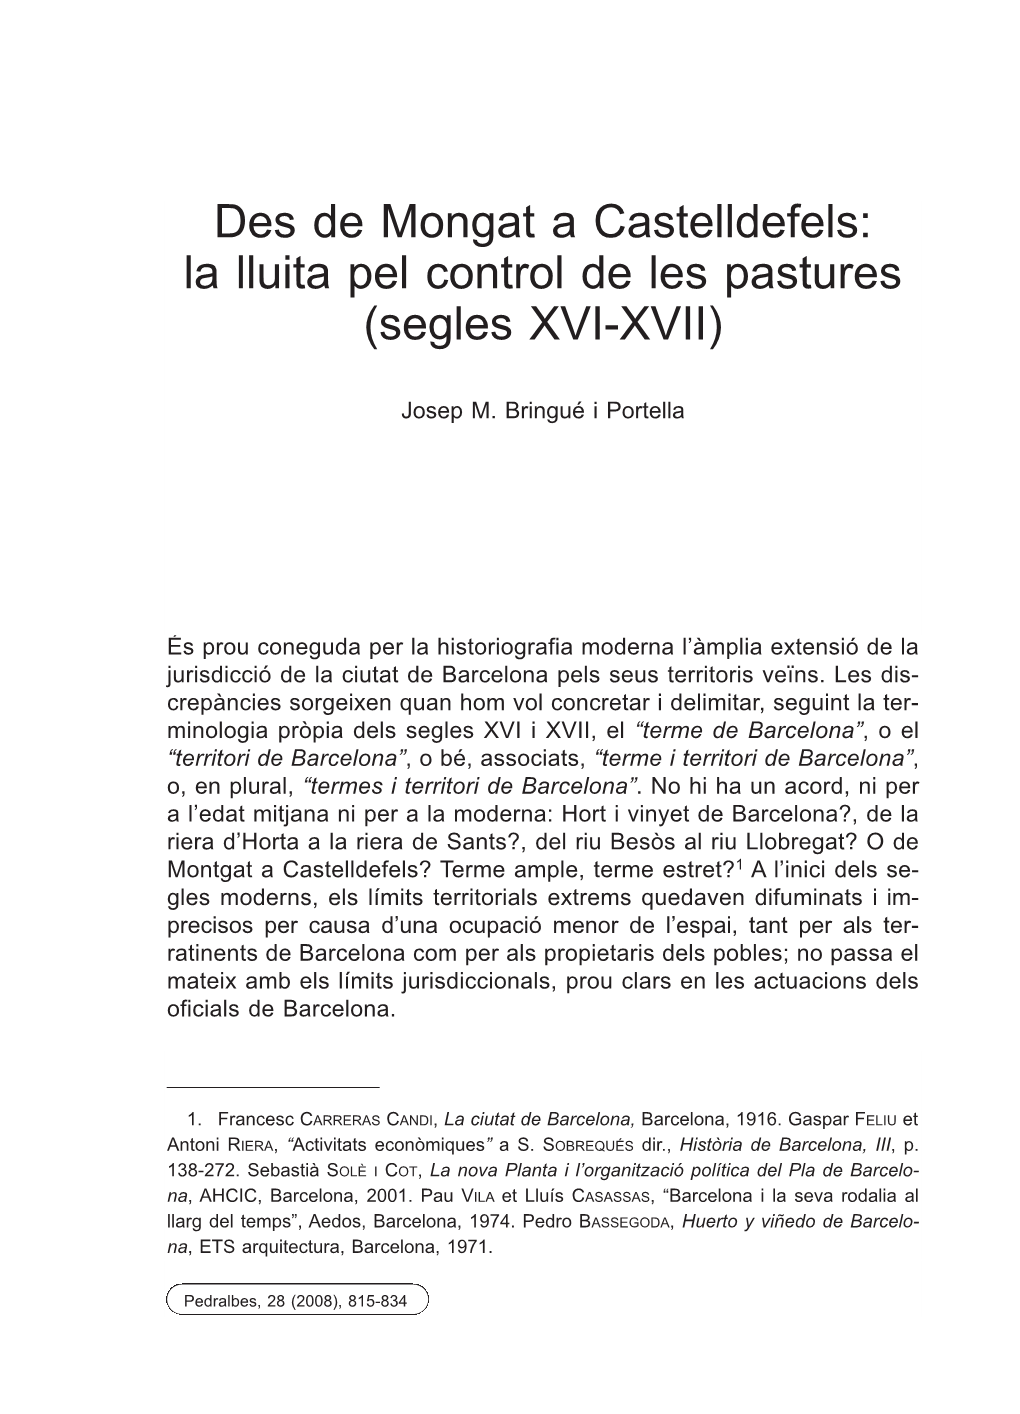 Des De Mongat a Castelldefels: La Lluita Pel Control De Les Pastures (Segles XVI-XVII)